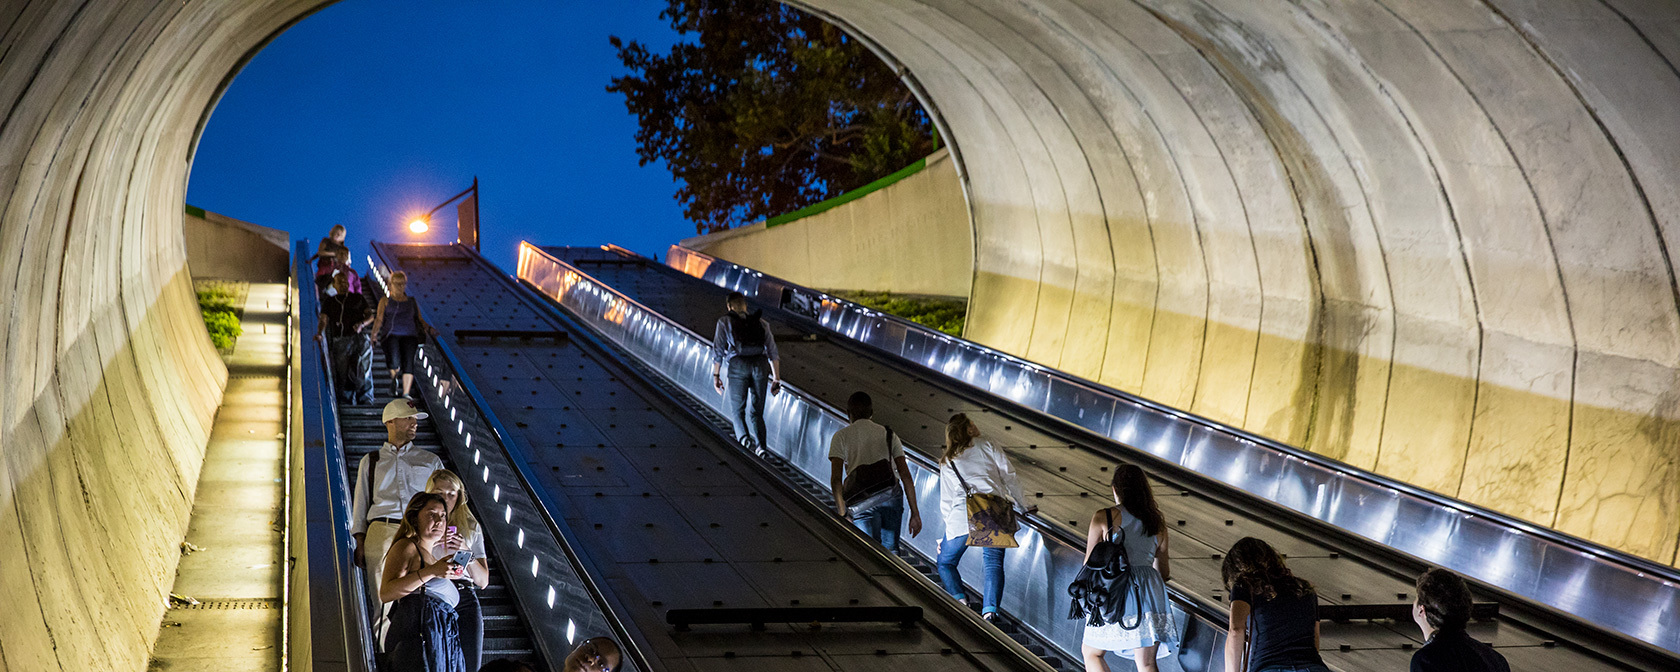 U-Bahn-Fahrer auf Rolltreppe am Nordausgang des Dupont Circle